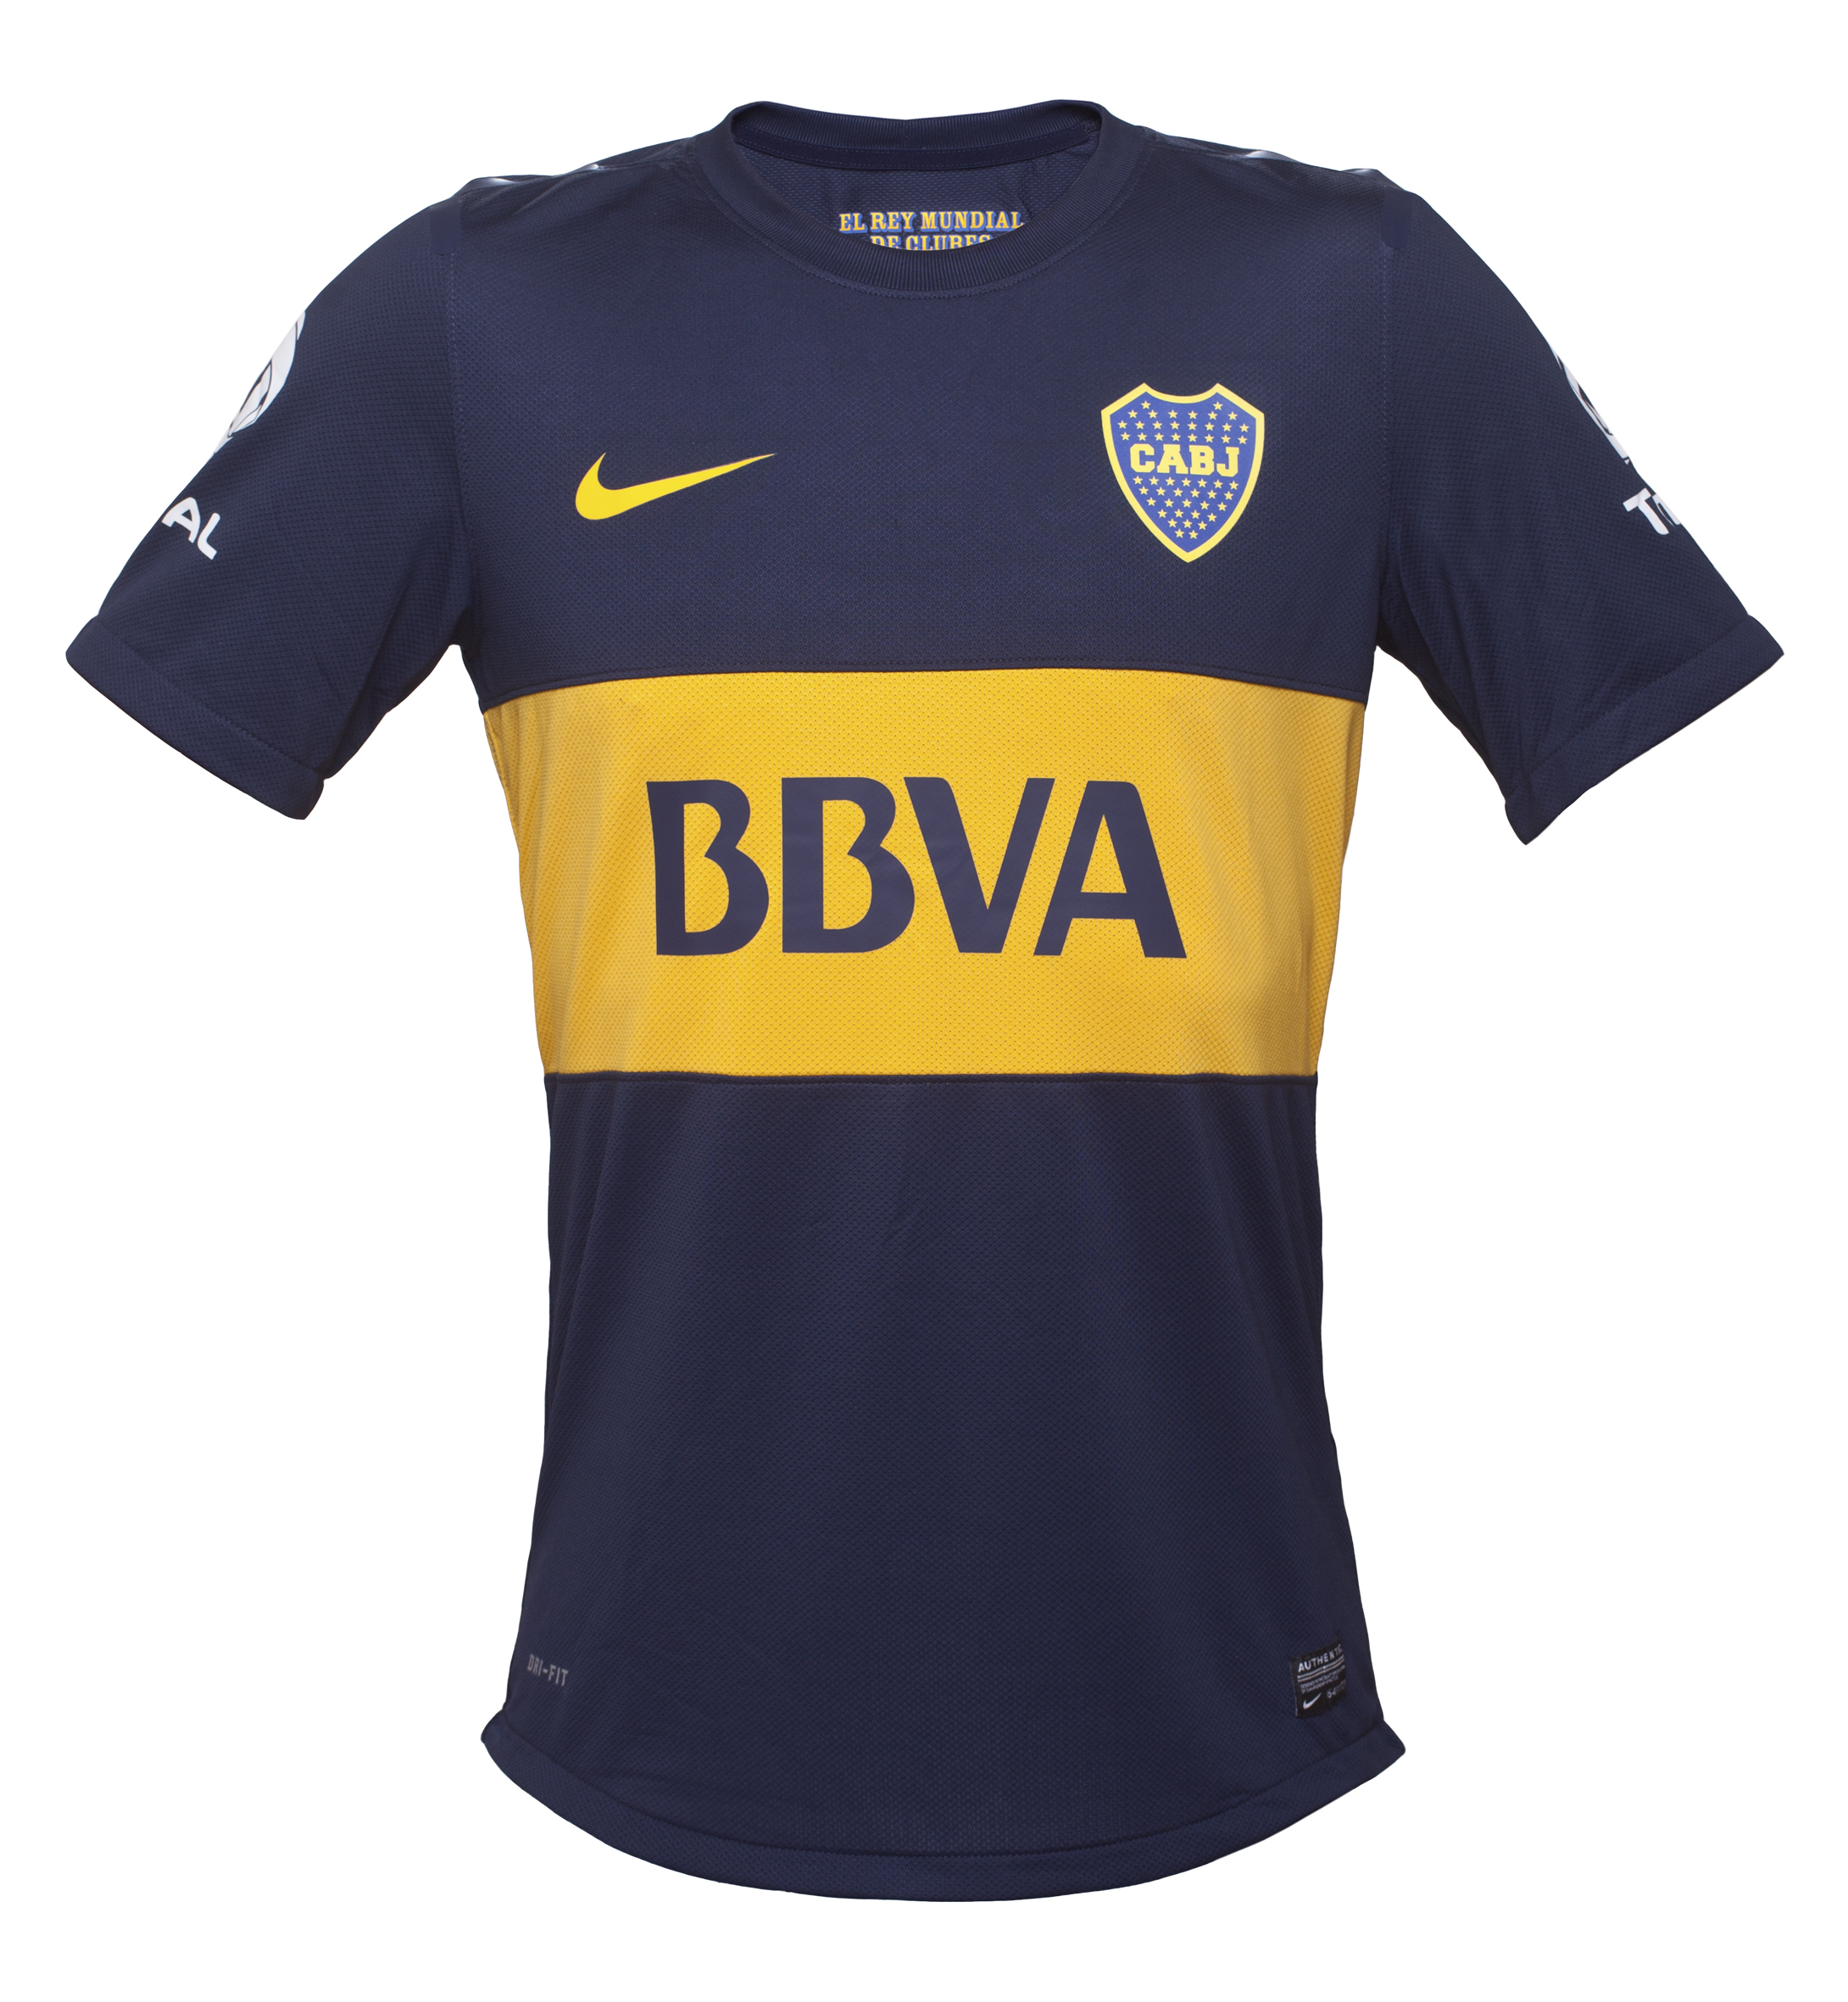 Nuevas camisetas Nike de Boca Juniors 2012-2013 - Marca de Gol